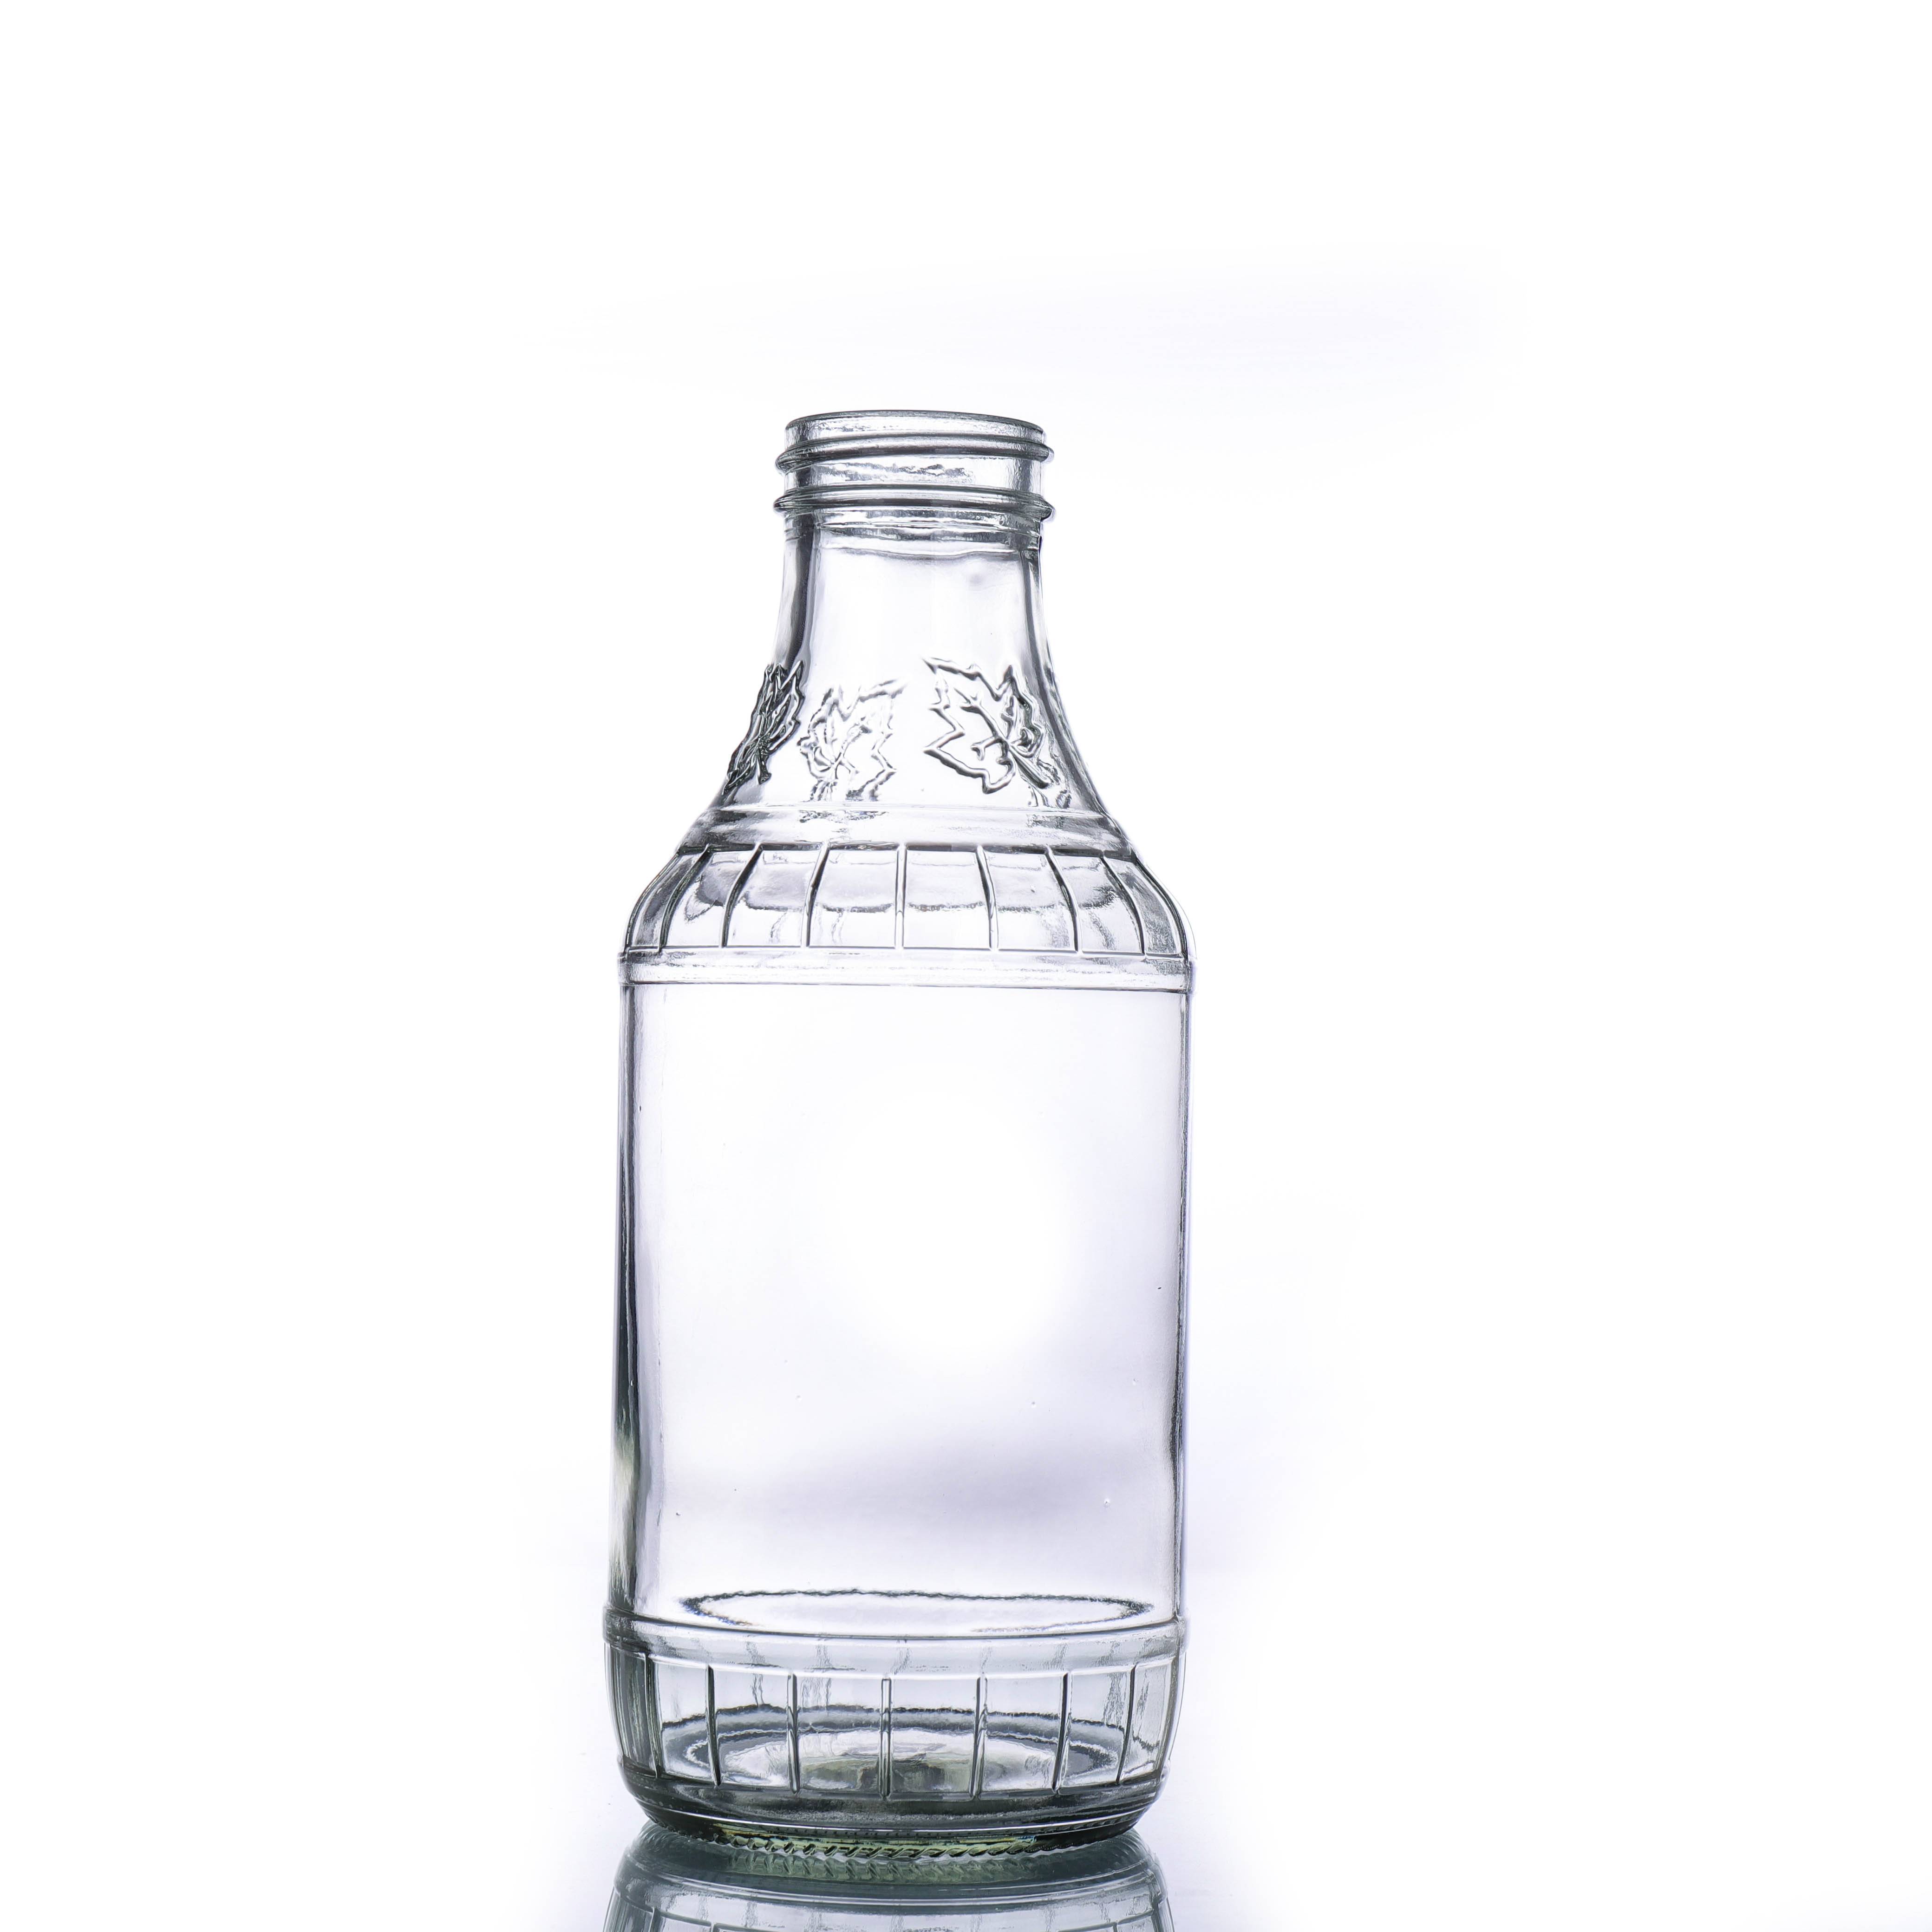 စက်ရုံမှ စျေးသက်သာသော ဟော့ပုလင်းဖန်ခွက်သေးသေး - 38 မီလီမီတာ အချောထည်ပါသော 16oz Clear Glass Decanter Bottle - Ant Glass